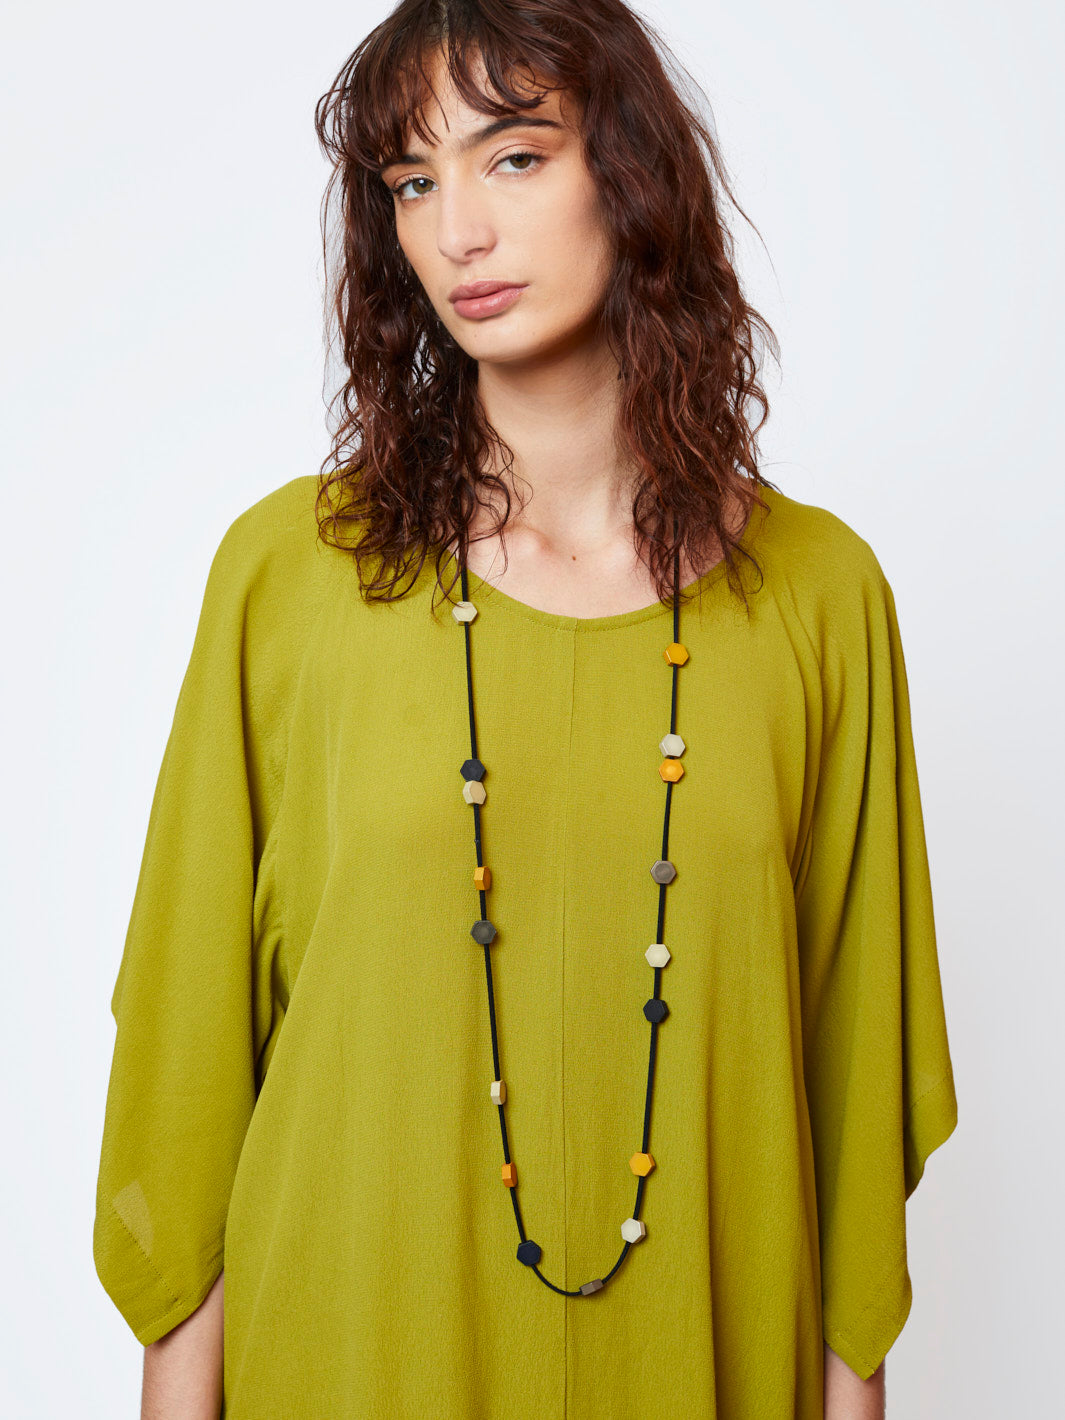 Women's Necklaces | Handmade Jewellery | Online | Melko Australia